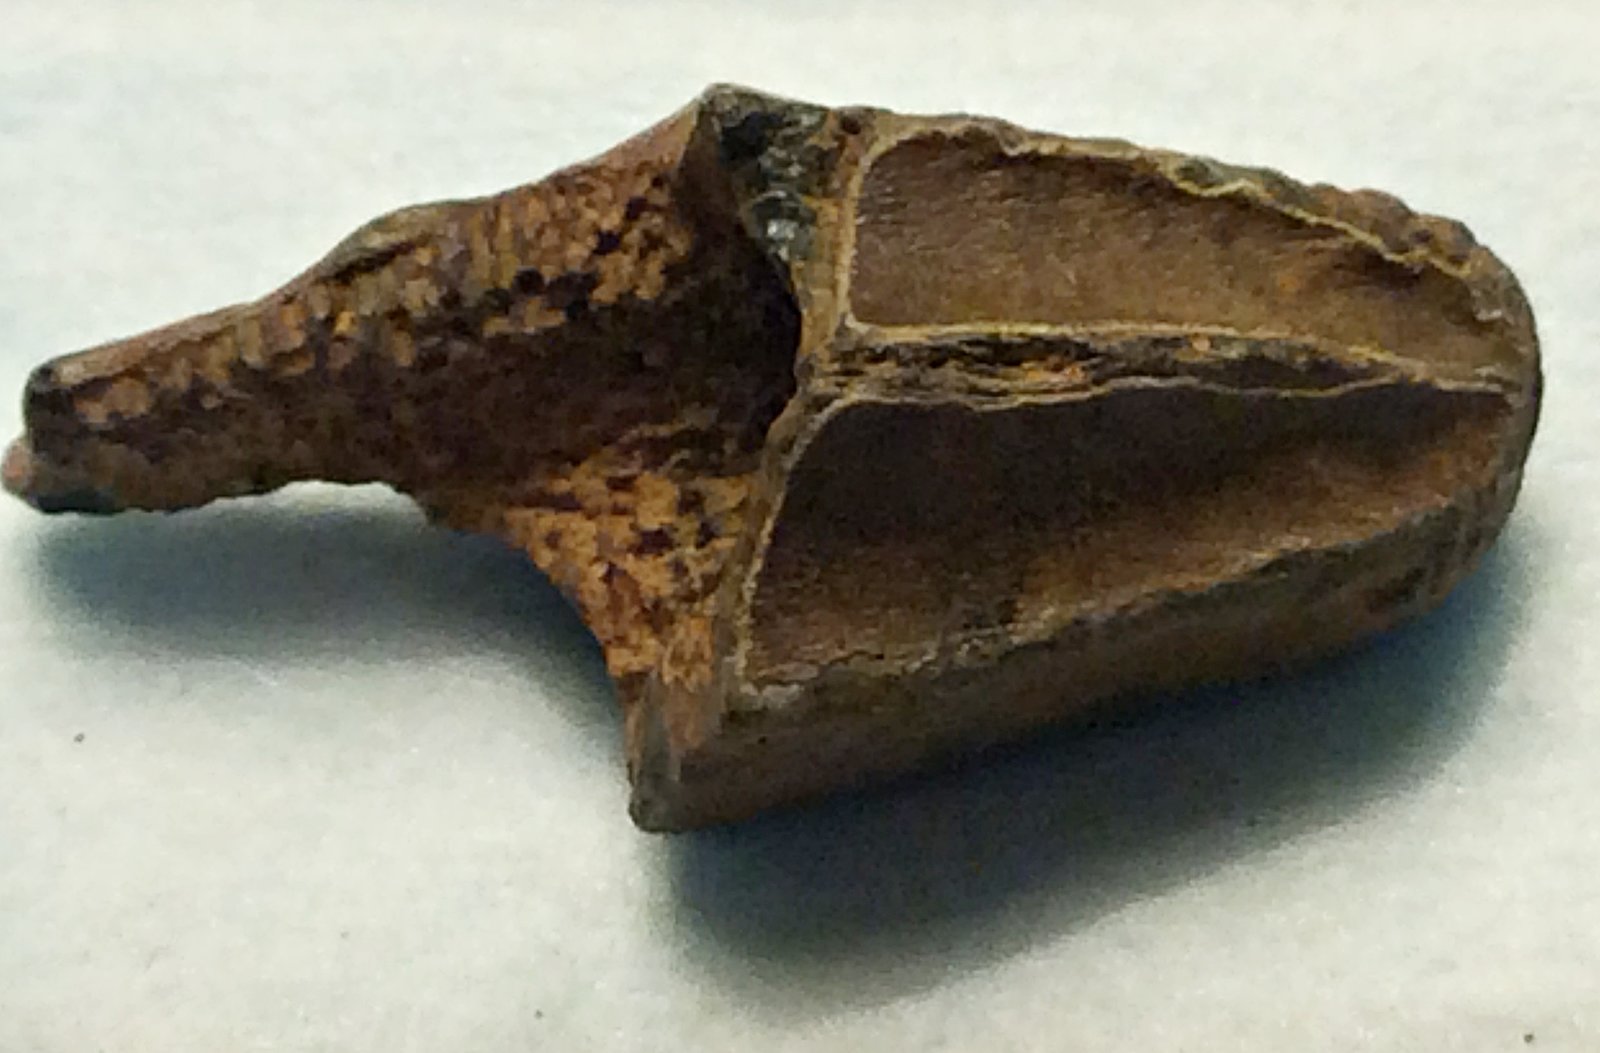 Broken Hadrosaur Tooth from Ramanessin Brook